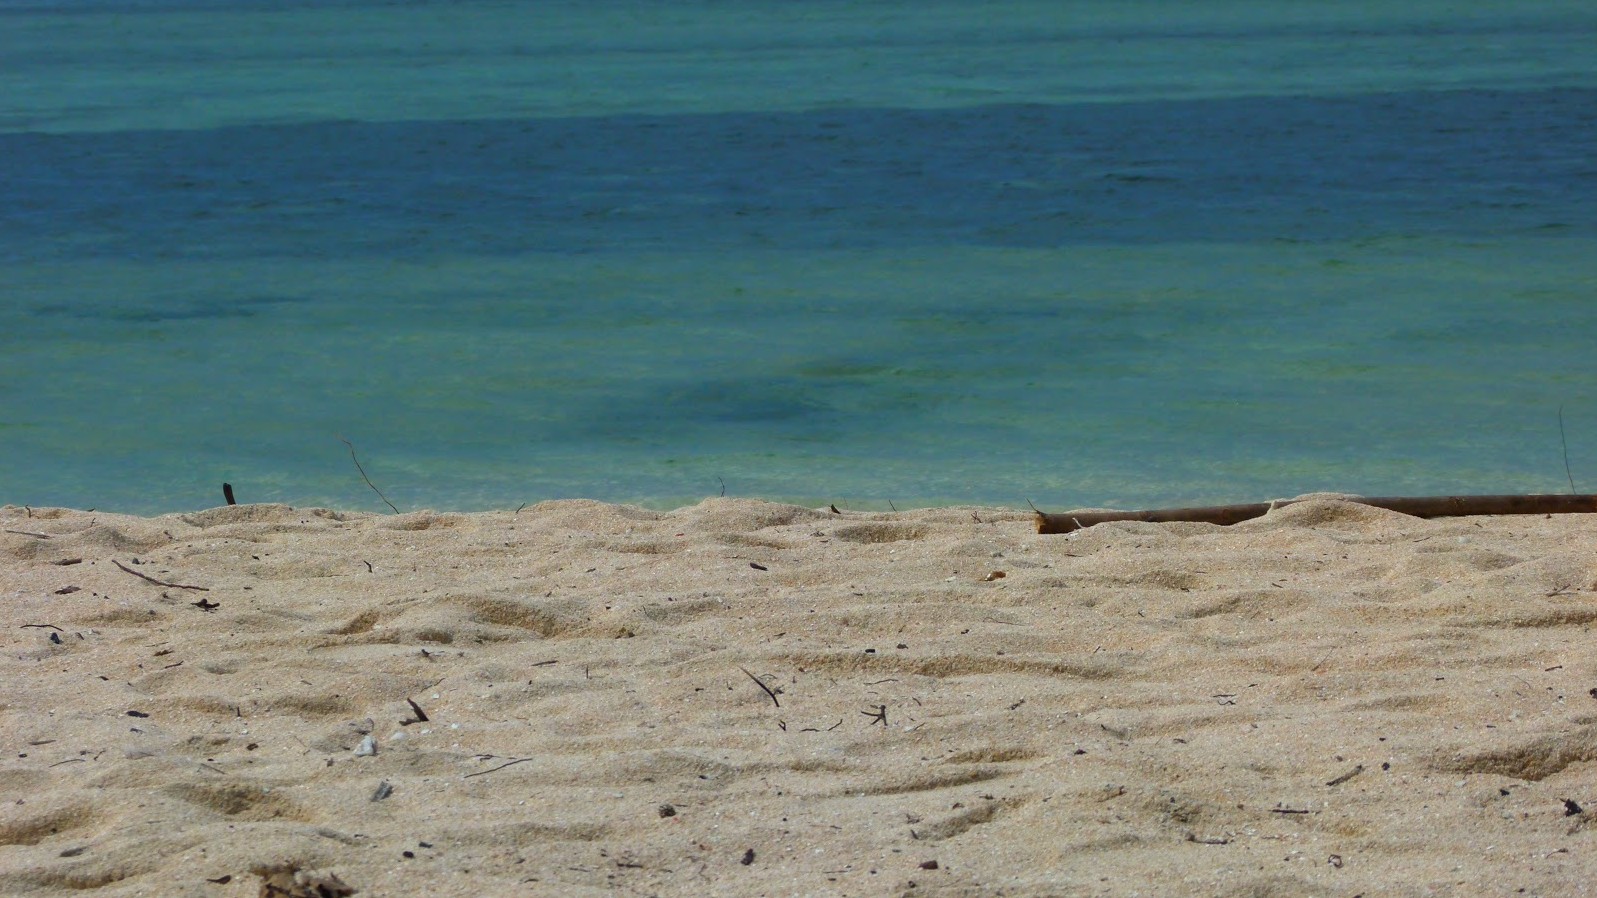 Scenery of Anguib Beach